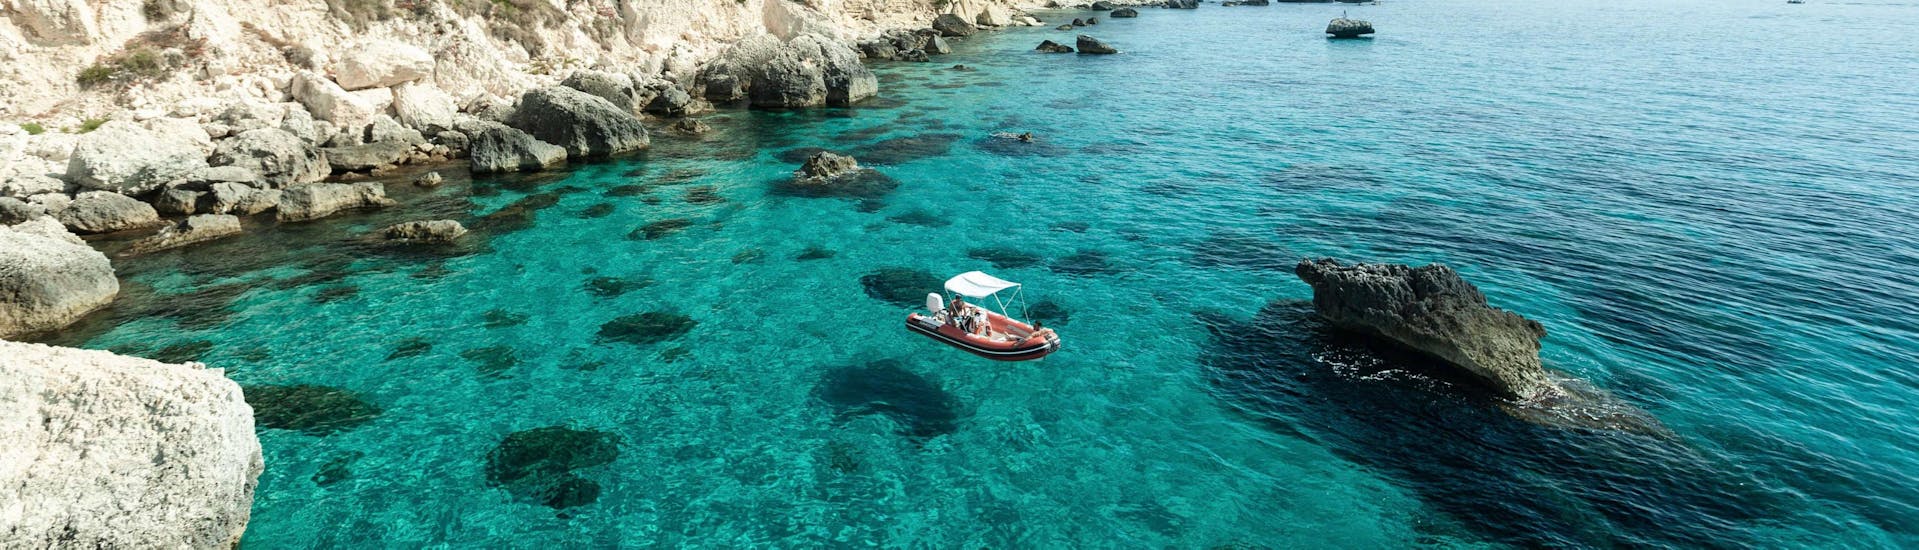 Il gommone usato da Blue Rent Boat Cagliari per le gite in barca attorno a Cagliari.